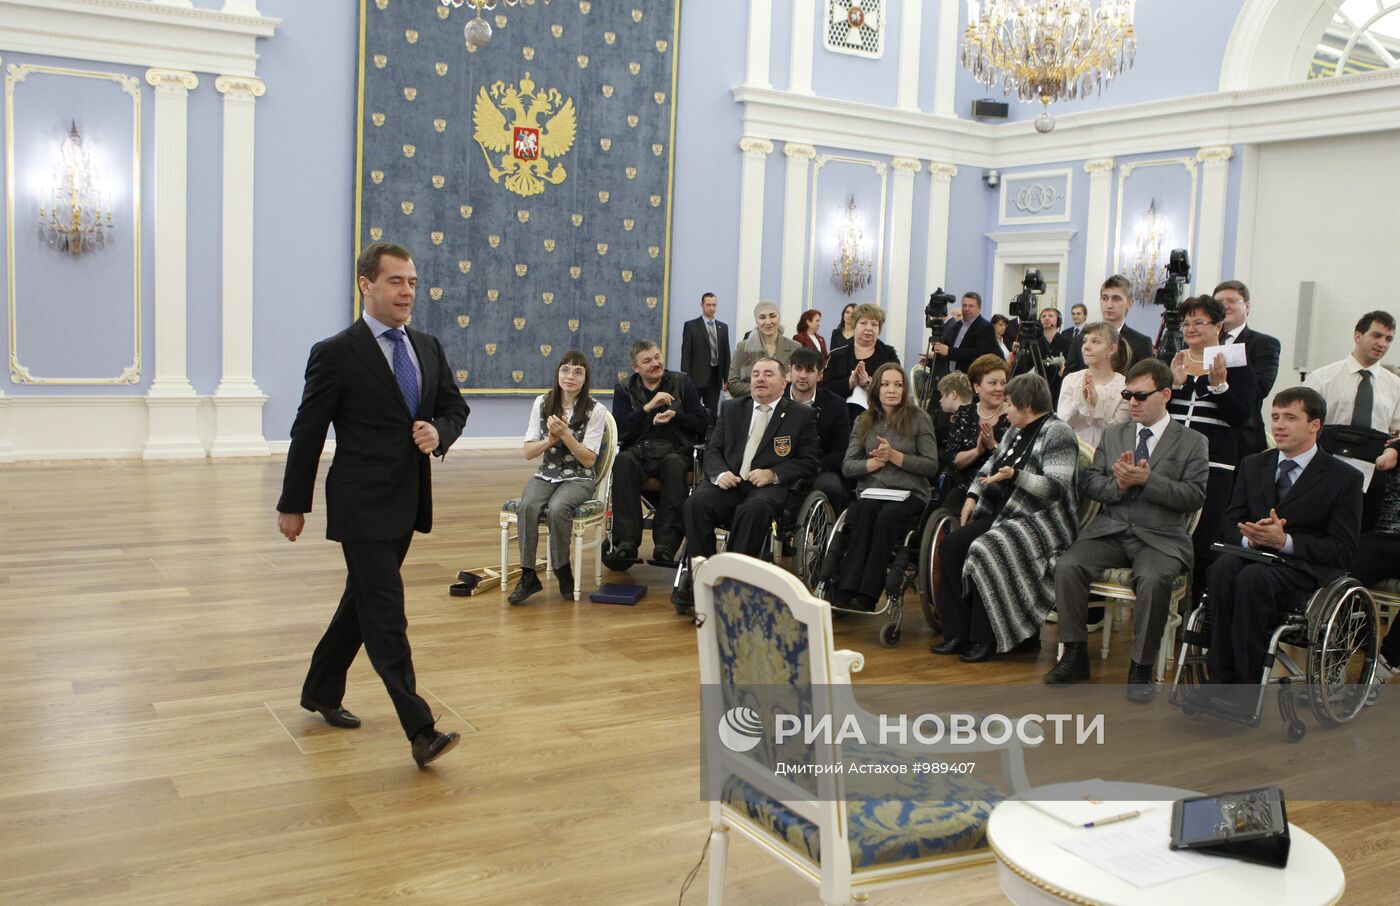 Д.Медведев встрпетился с инвалидами